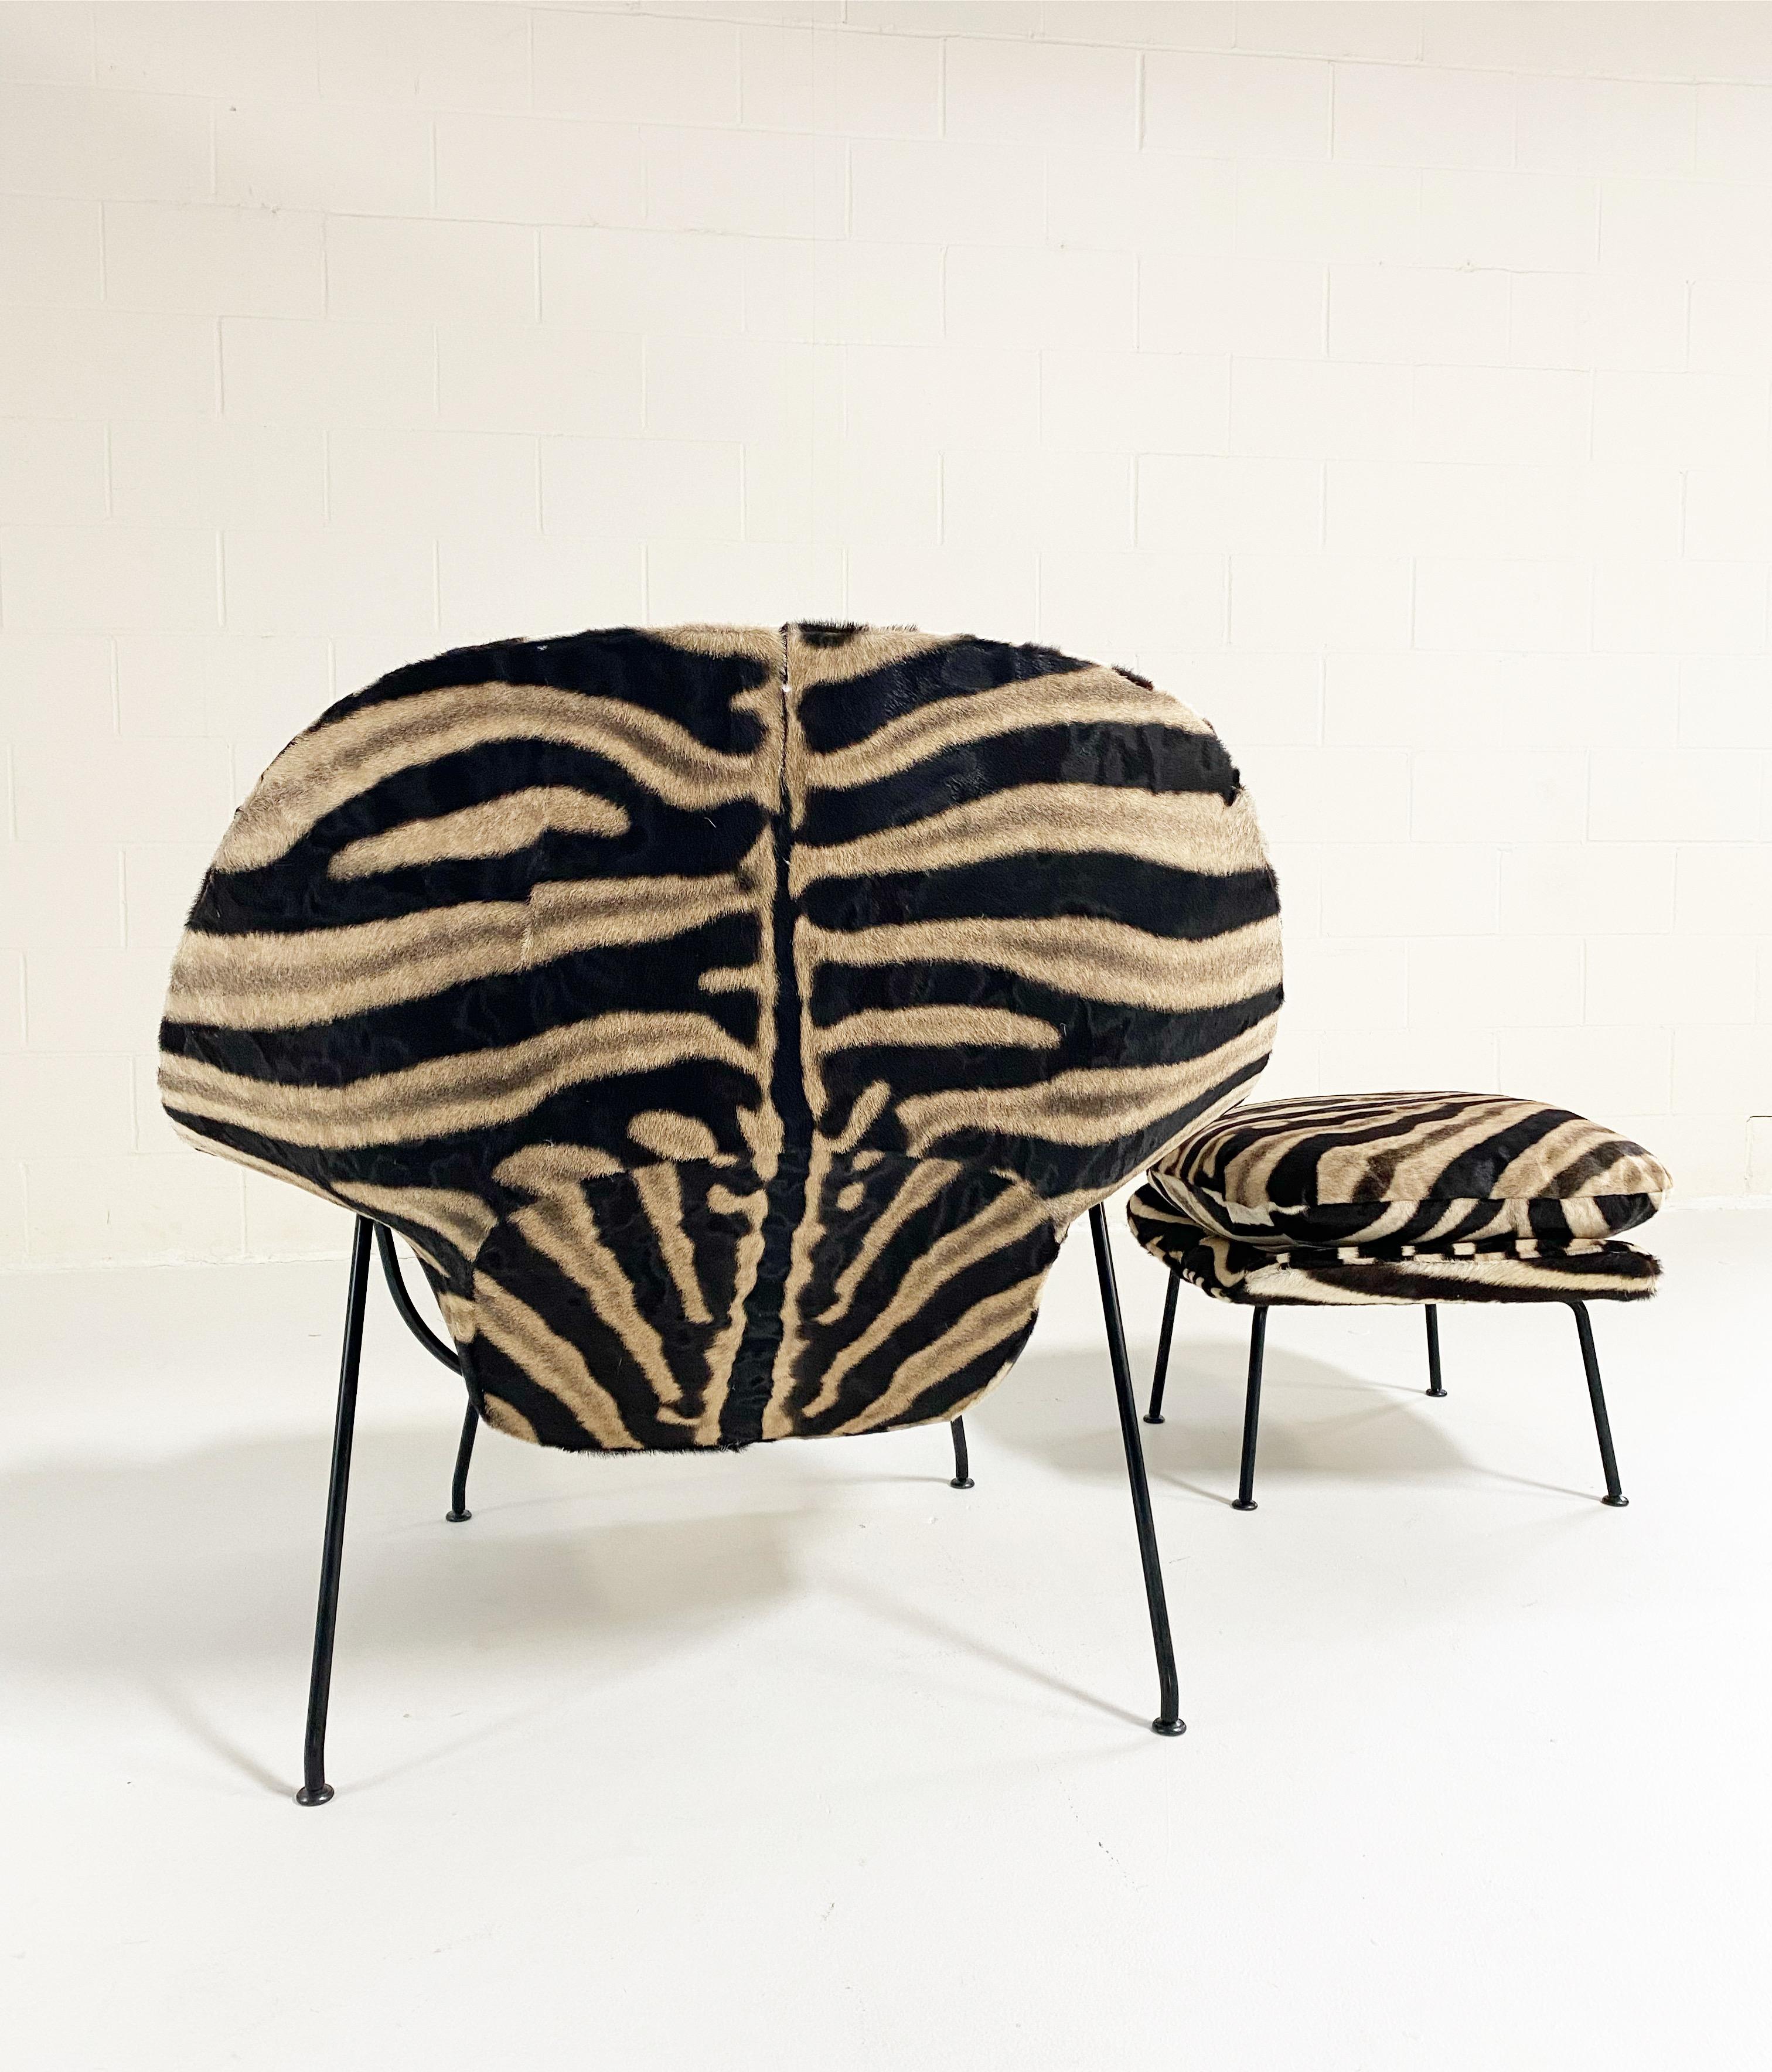 Ein Favorit des Forsyth-Designteams! Wir haben eine unglaubliche Sammlung von Vintage-Stühlen und Design-Ikonen, die auf ein neues Leben warten. Unsere upgecycelten Womb Chairs gehören zu unseren beliebtesten Designs. 

Dieser Womb Chair und